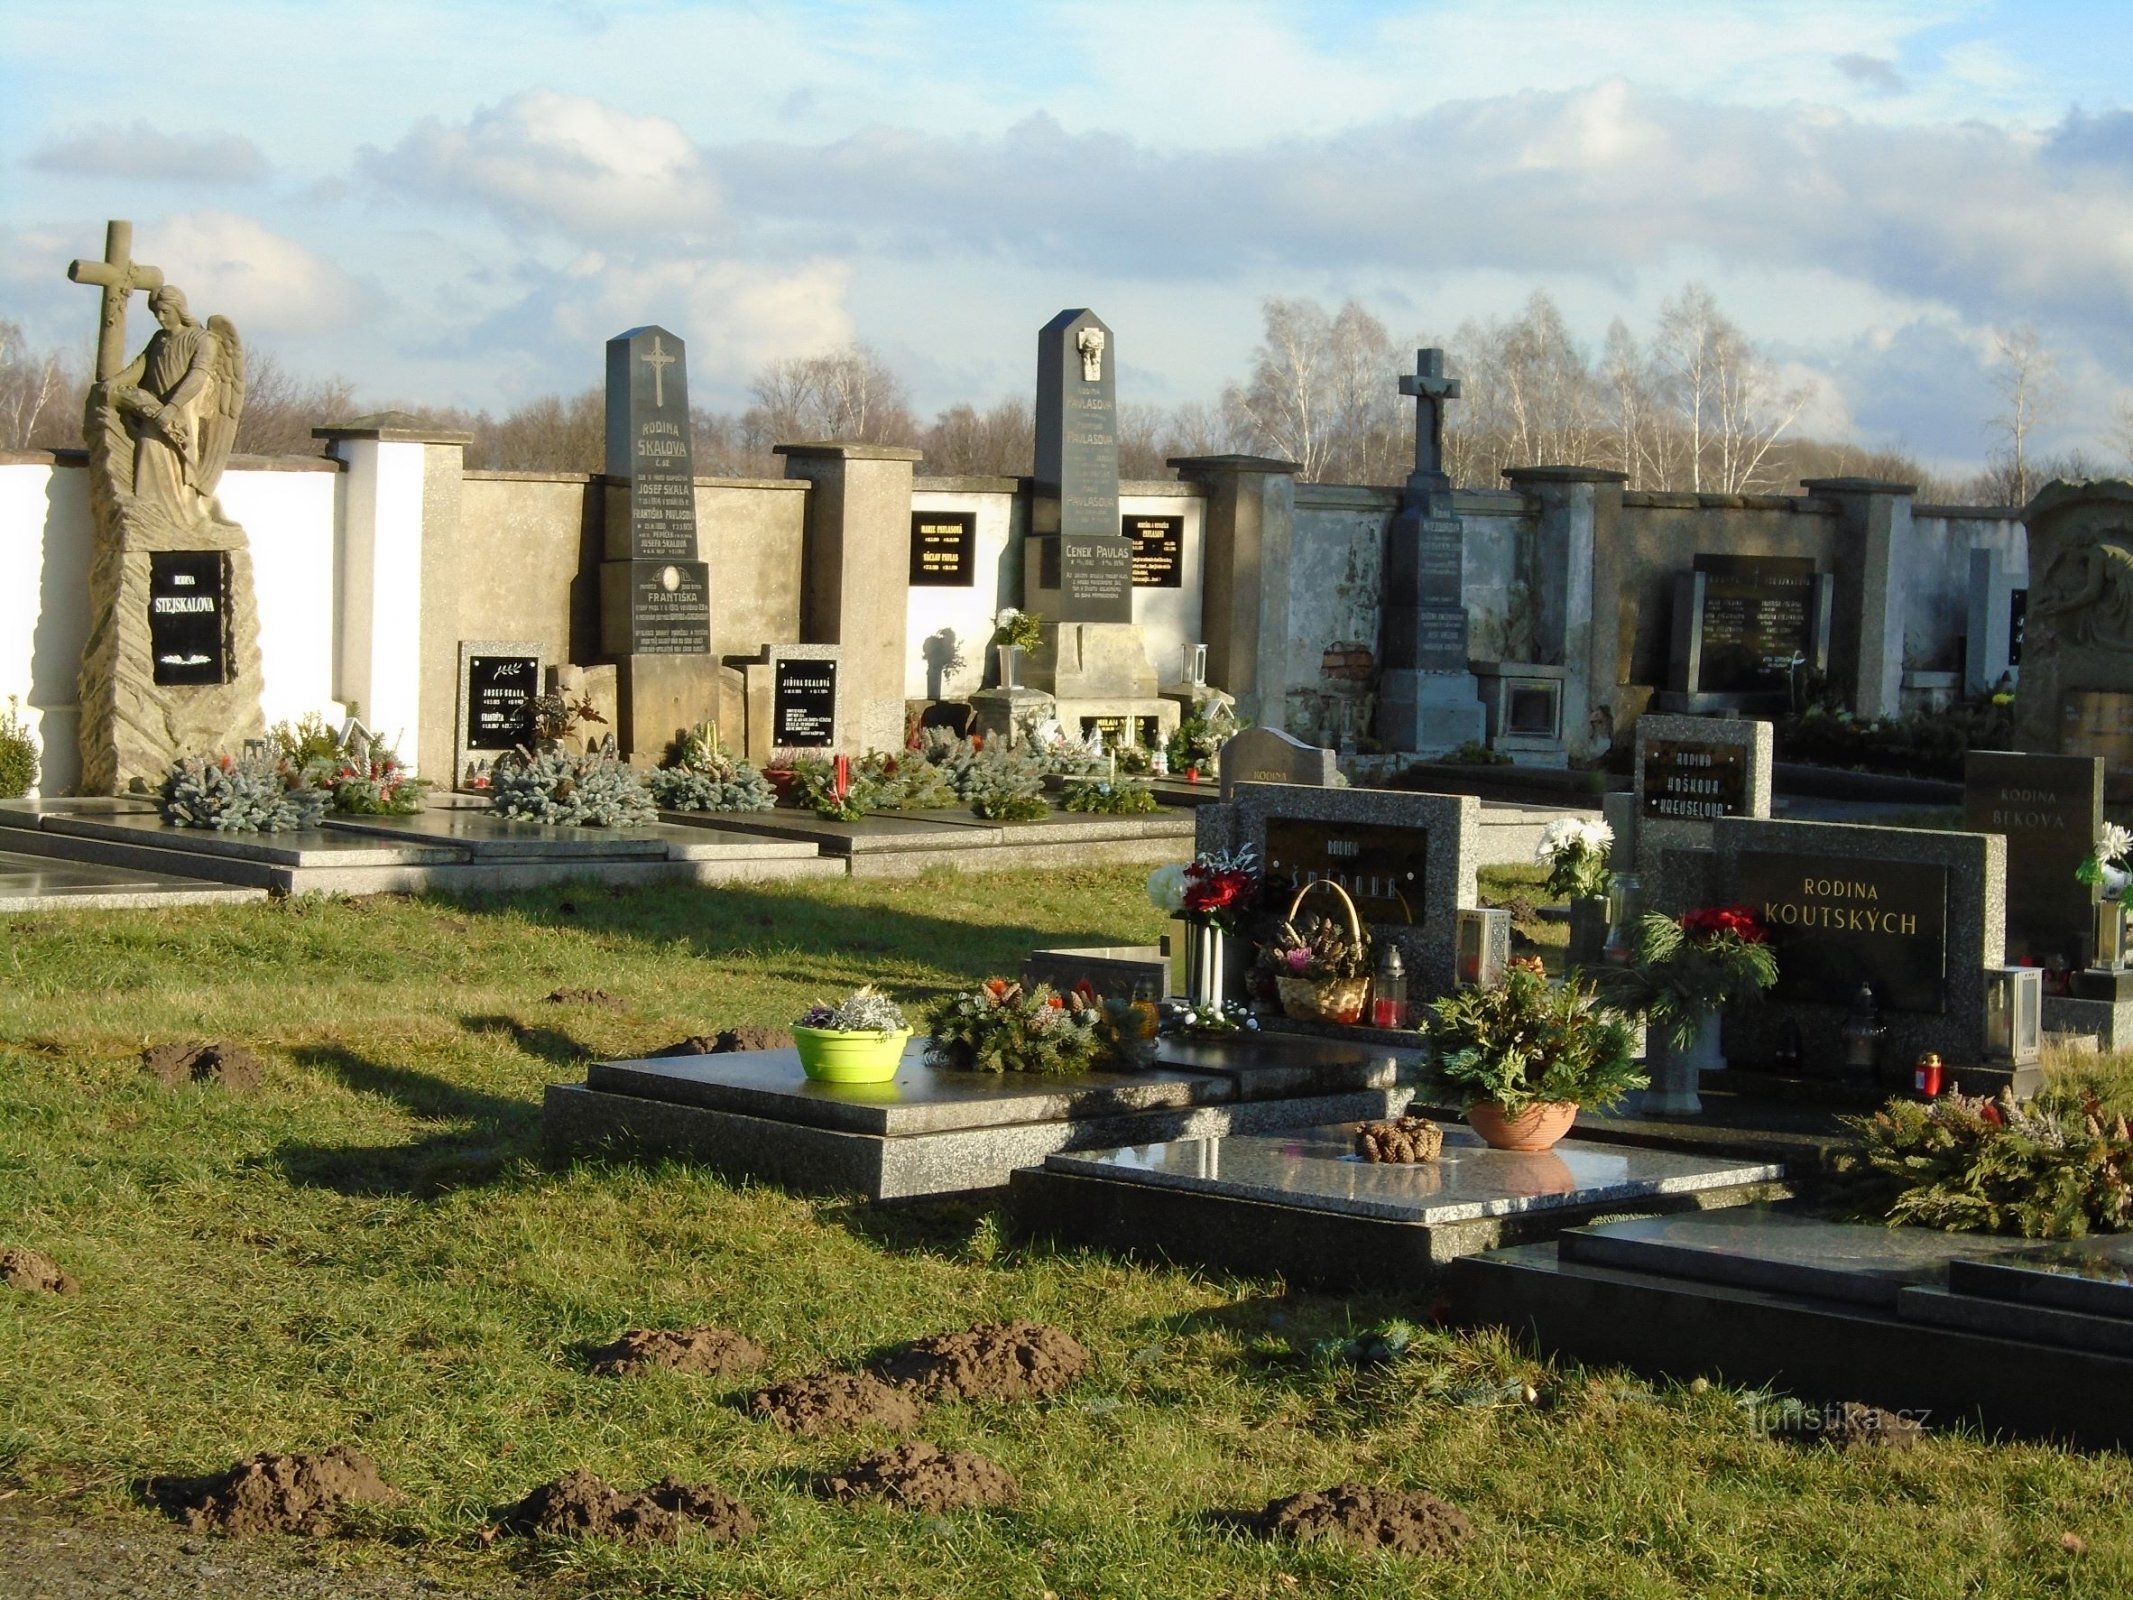 墓地とその背後にあるナー バーンの場所 (Libišany、6.1.2018 年 XNUMX 月 XNUMX 日)